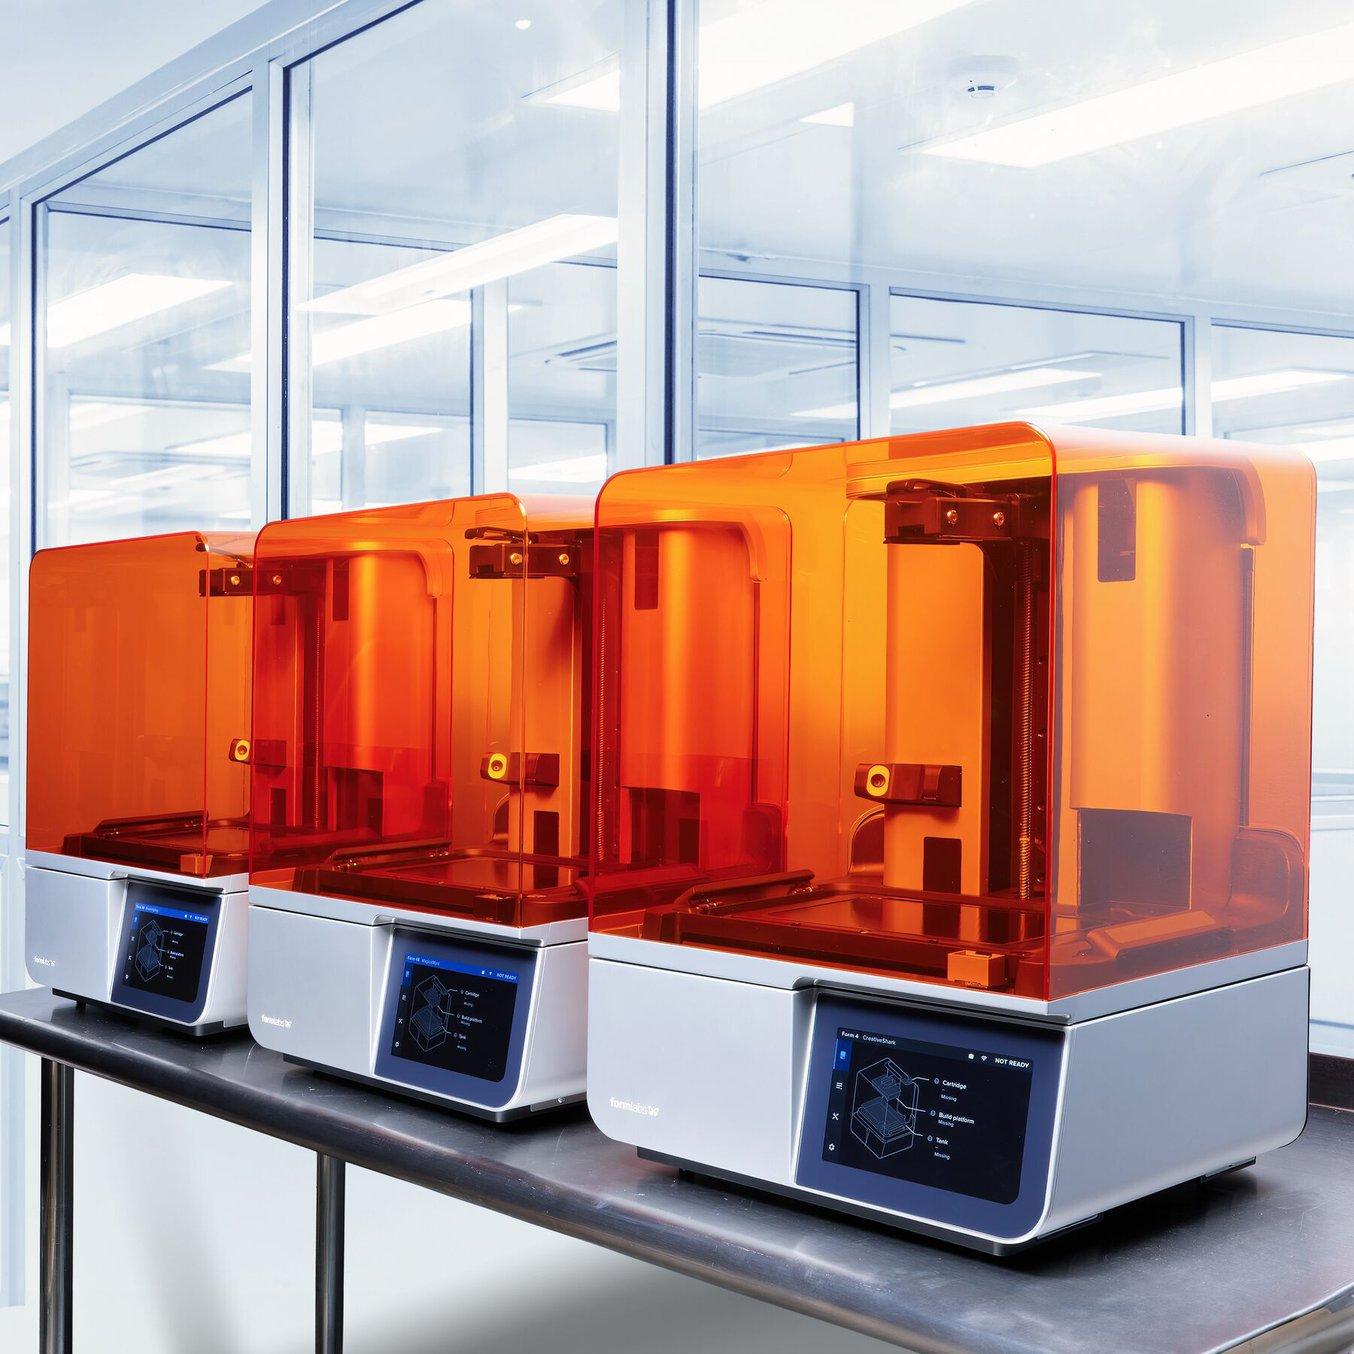 Formlabs fleet of 3D printers